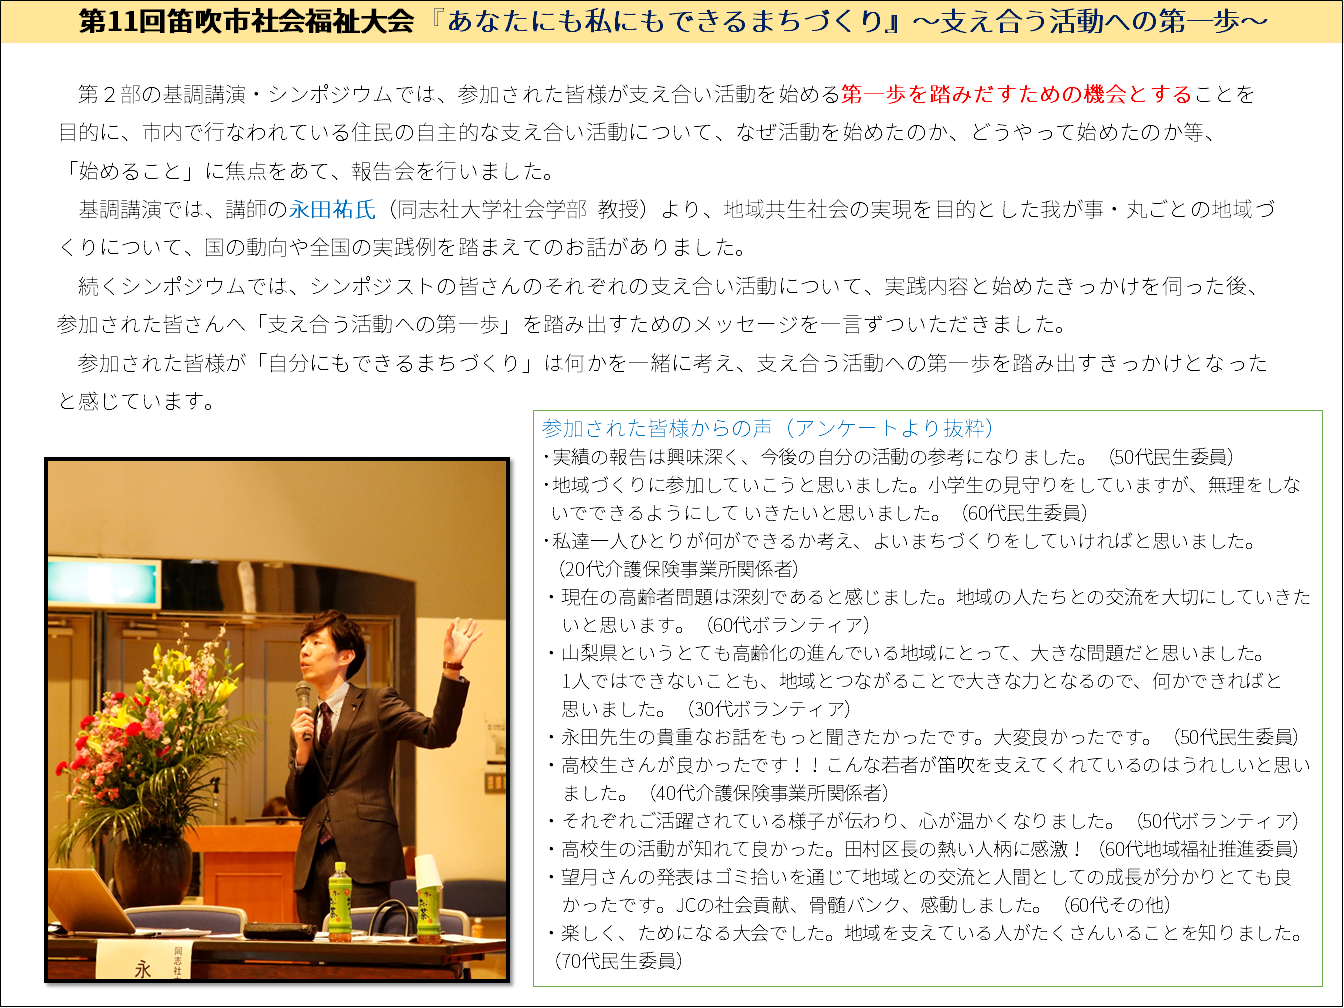 http://www.fuefuki-shakyo.or.jp/oshirase/%E5%A4%A7%E4%BC%9A%E3%82%B9%E3%83%A9%E3%82%A4%E3%83%893.PNG